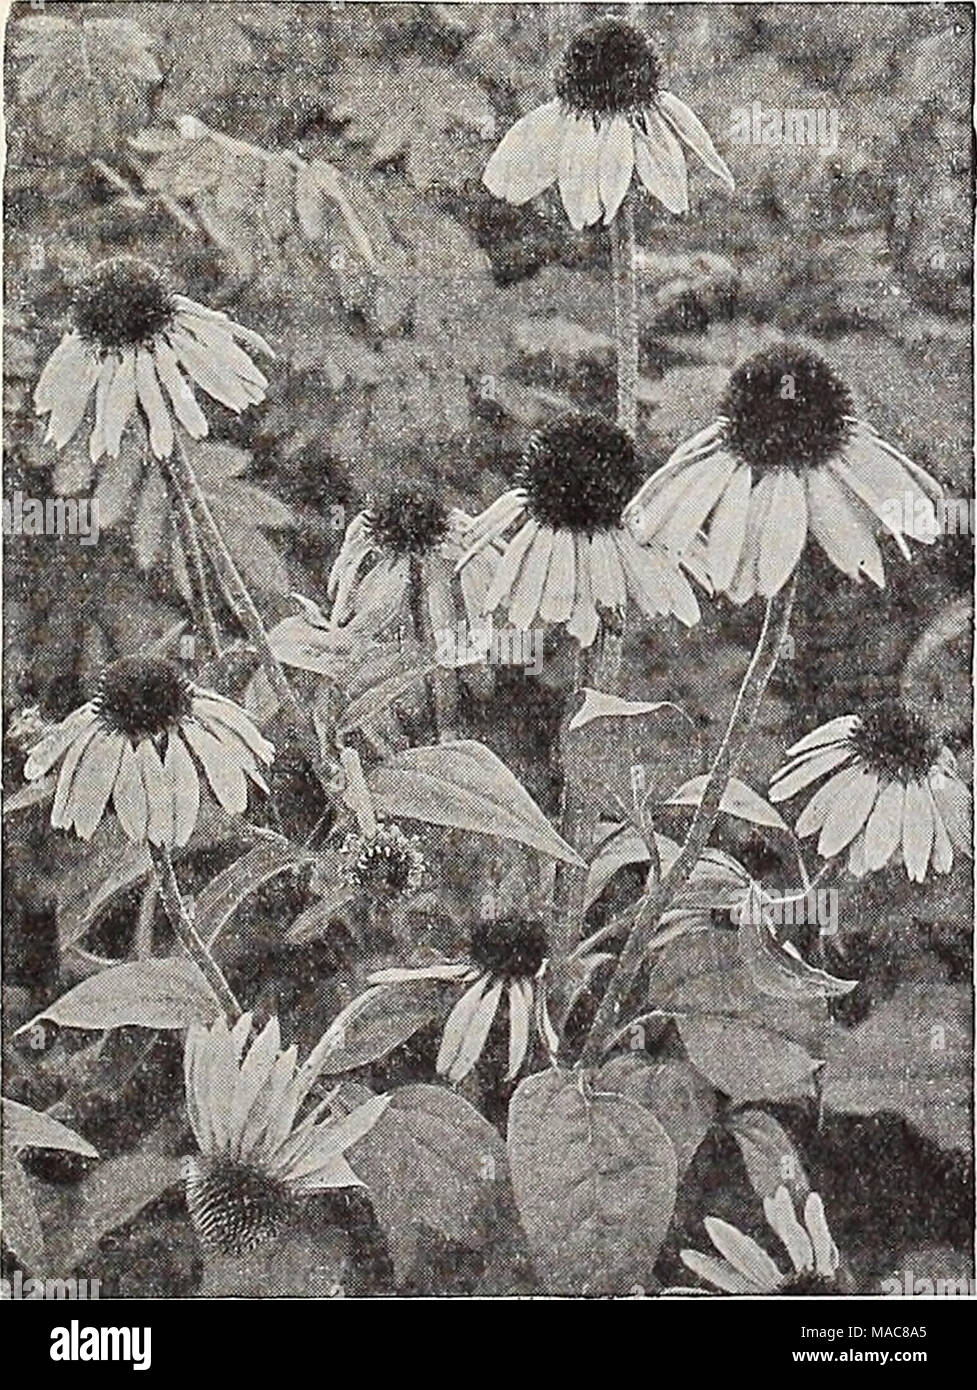 Du milieu de l'été 1932 Dreer liste . Rudbeckia purpurea (violet)  Cone-Flower géant 3928 Grandifiora Azurea. Un hardy, variété vivace  produisant 10 en août et septembre des pics de jolies fleurs